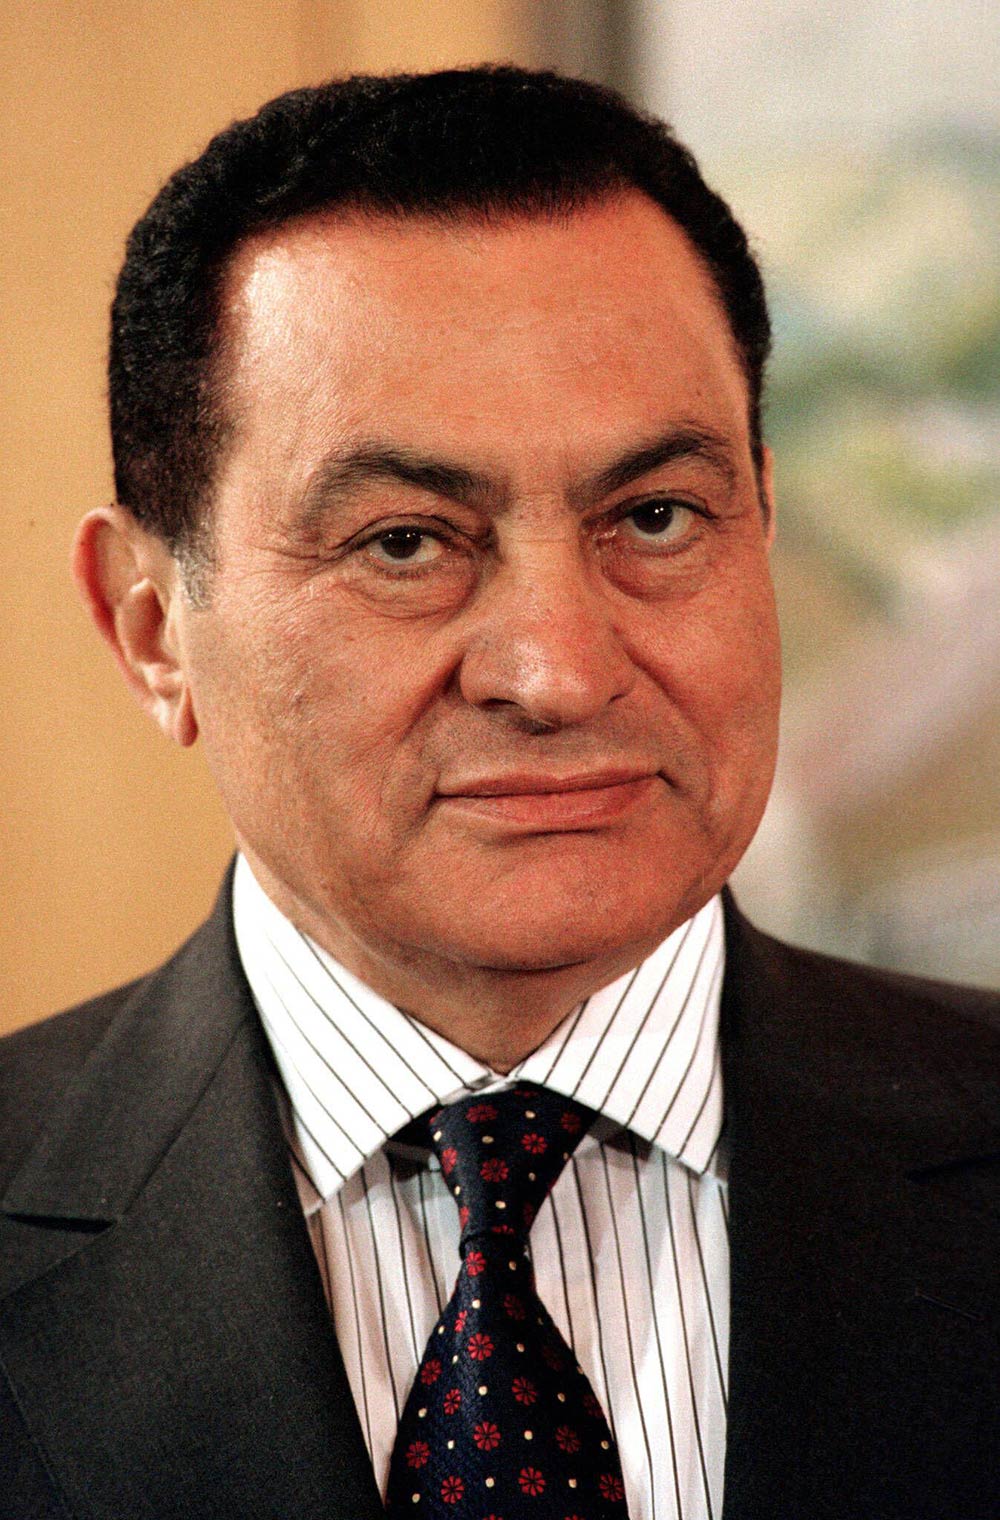 suisse-secrets/Hosni-Mubarak-Alamy.jpg